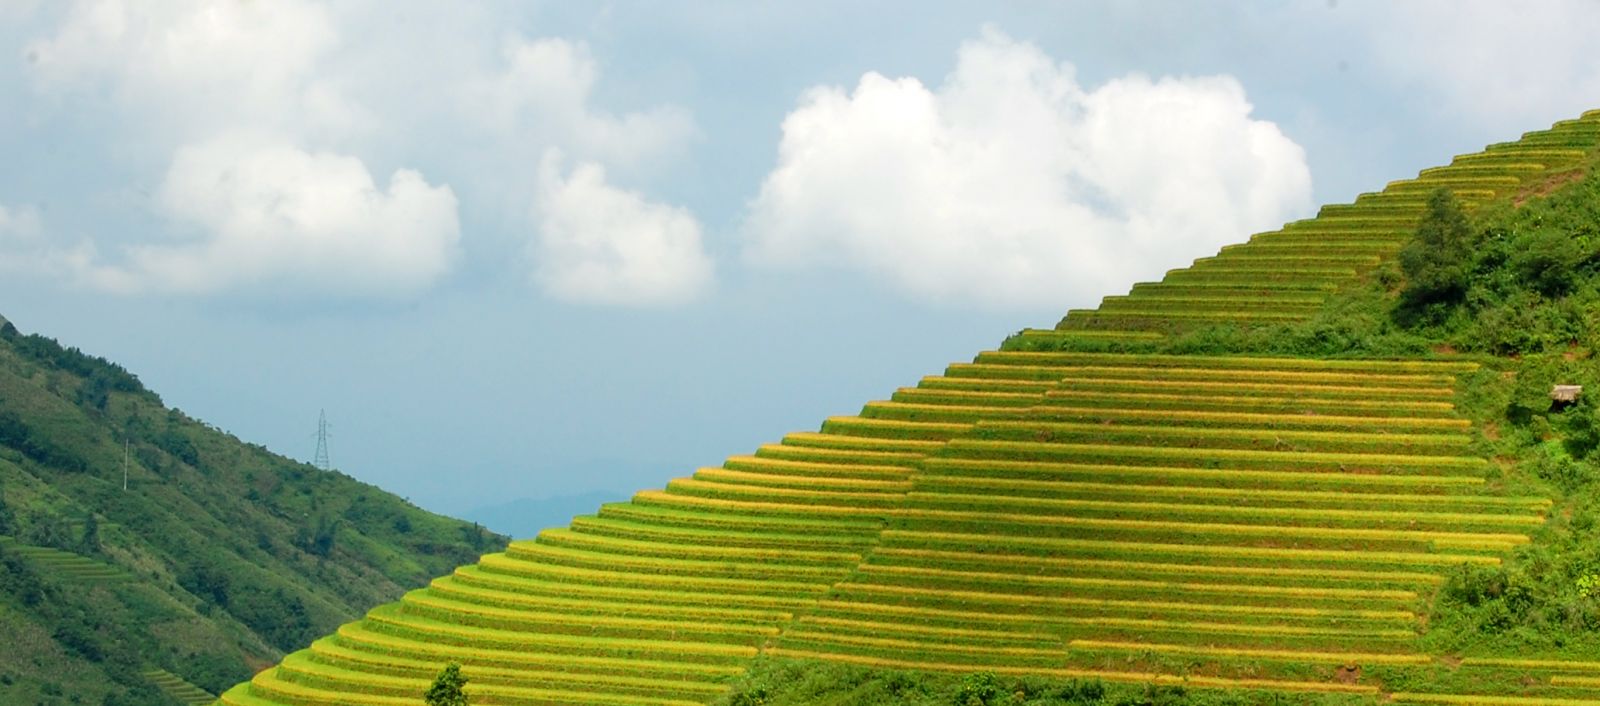 Ruộng bậc thang Sa Pa ( Lào Cai ) được tạp chí du lịch Mỹ Travel and Leisure bình chọn nằm trong Top 7 ruộng bậc thang đẹp, kỳ vỹ nhất châu Á và thế giới.p/Ảnh: Phạm Ngọc Triển